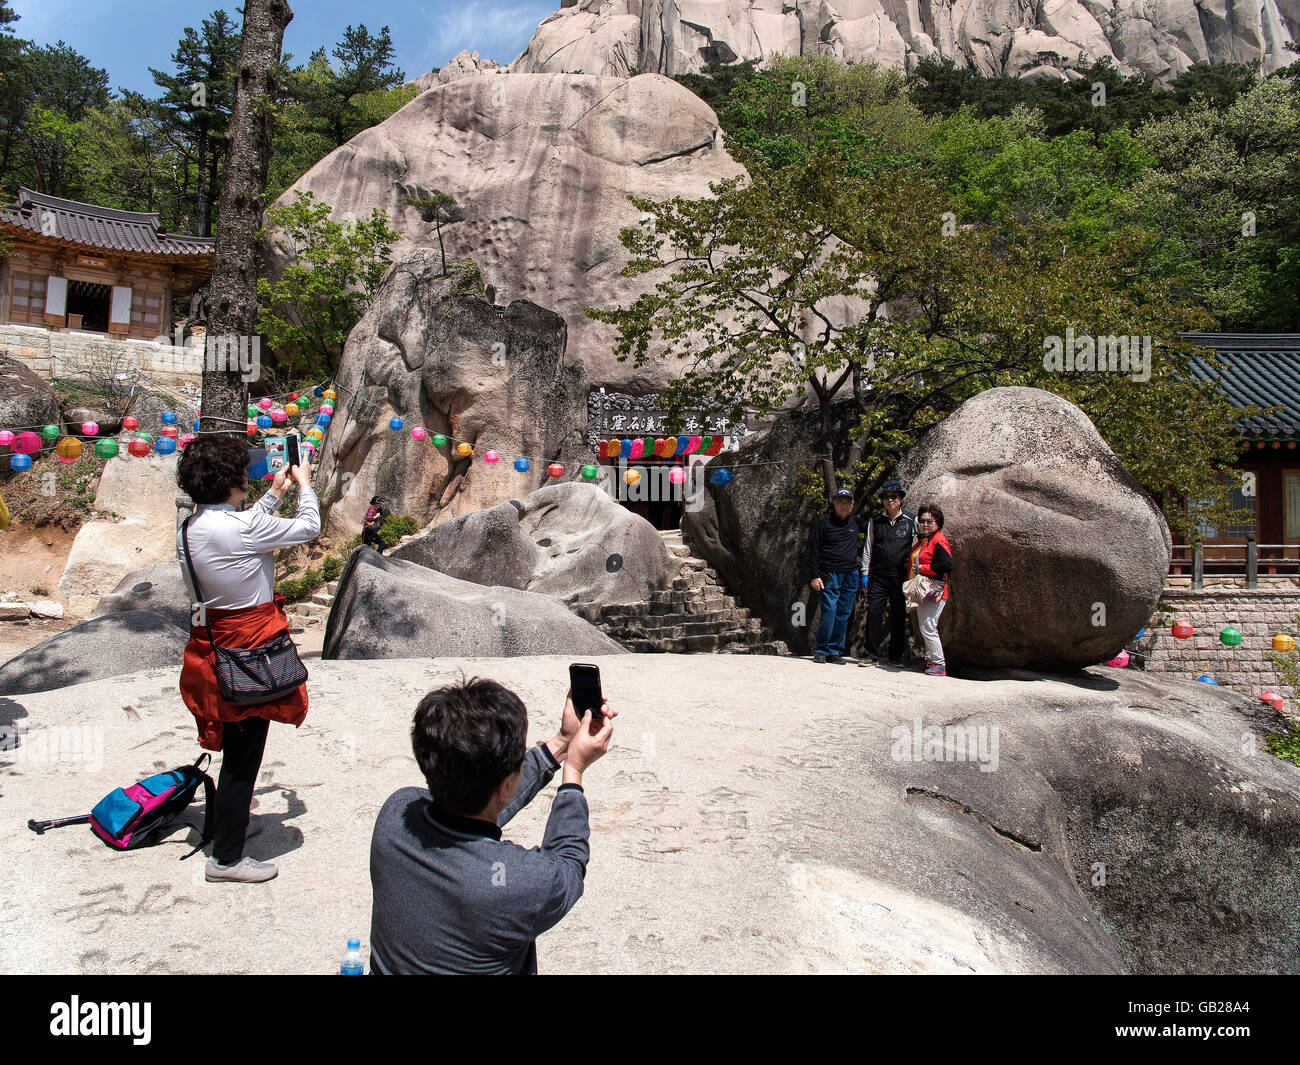 Vobulation rock Heundeulbawi, Seoraksan Parc National près de Cavaillon, province Gangwon, en Corée du Sud, Asie, réserve de biosphère de l'UNESCO Banque D'Images